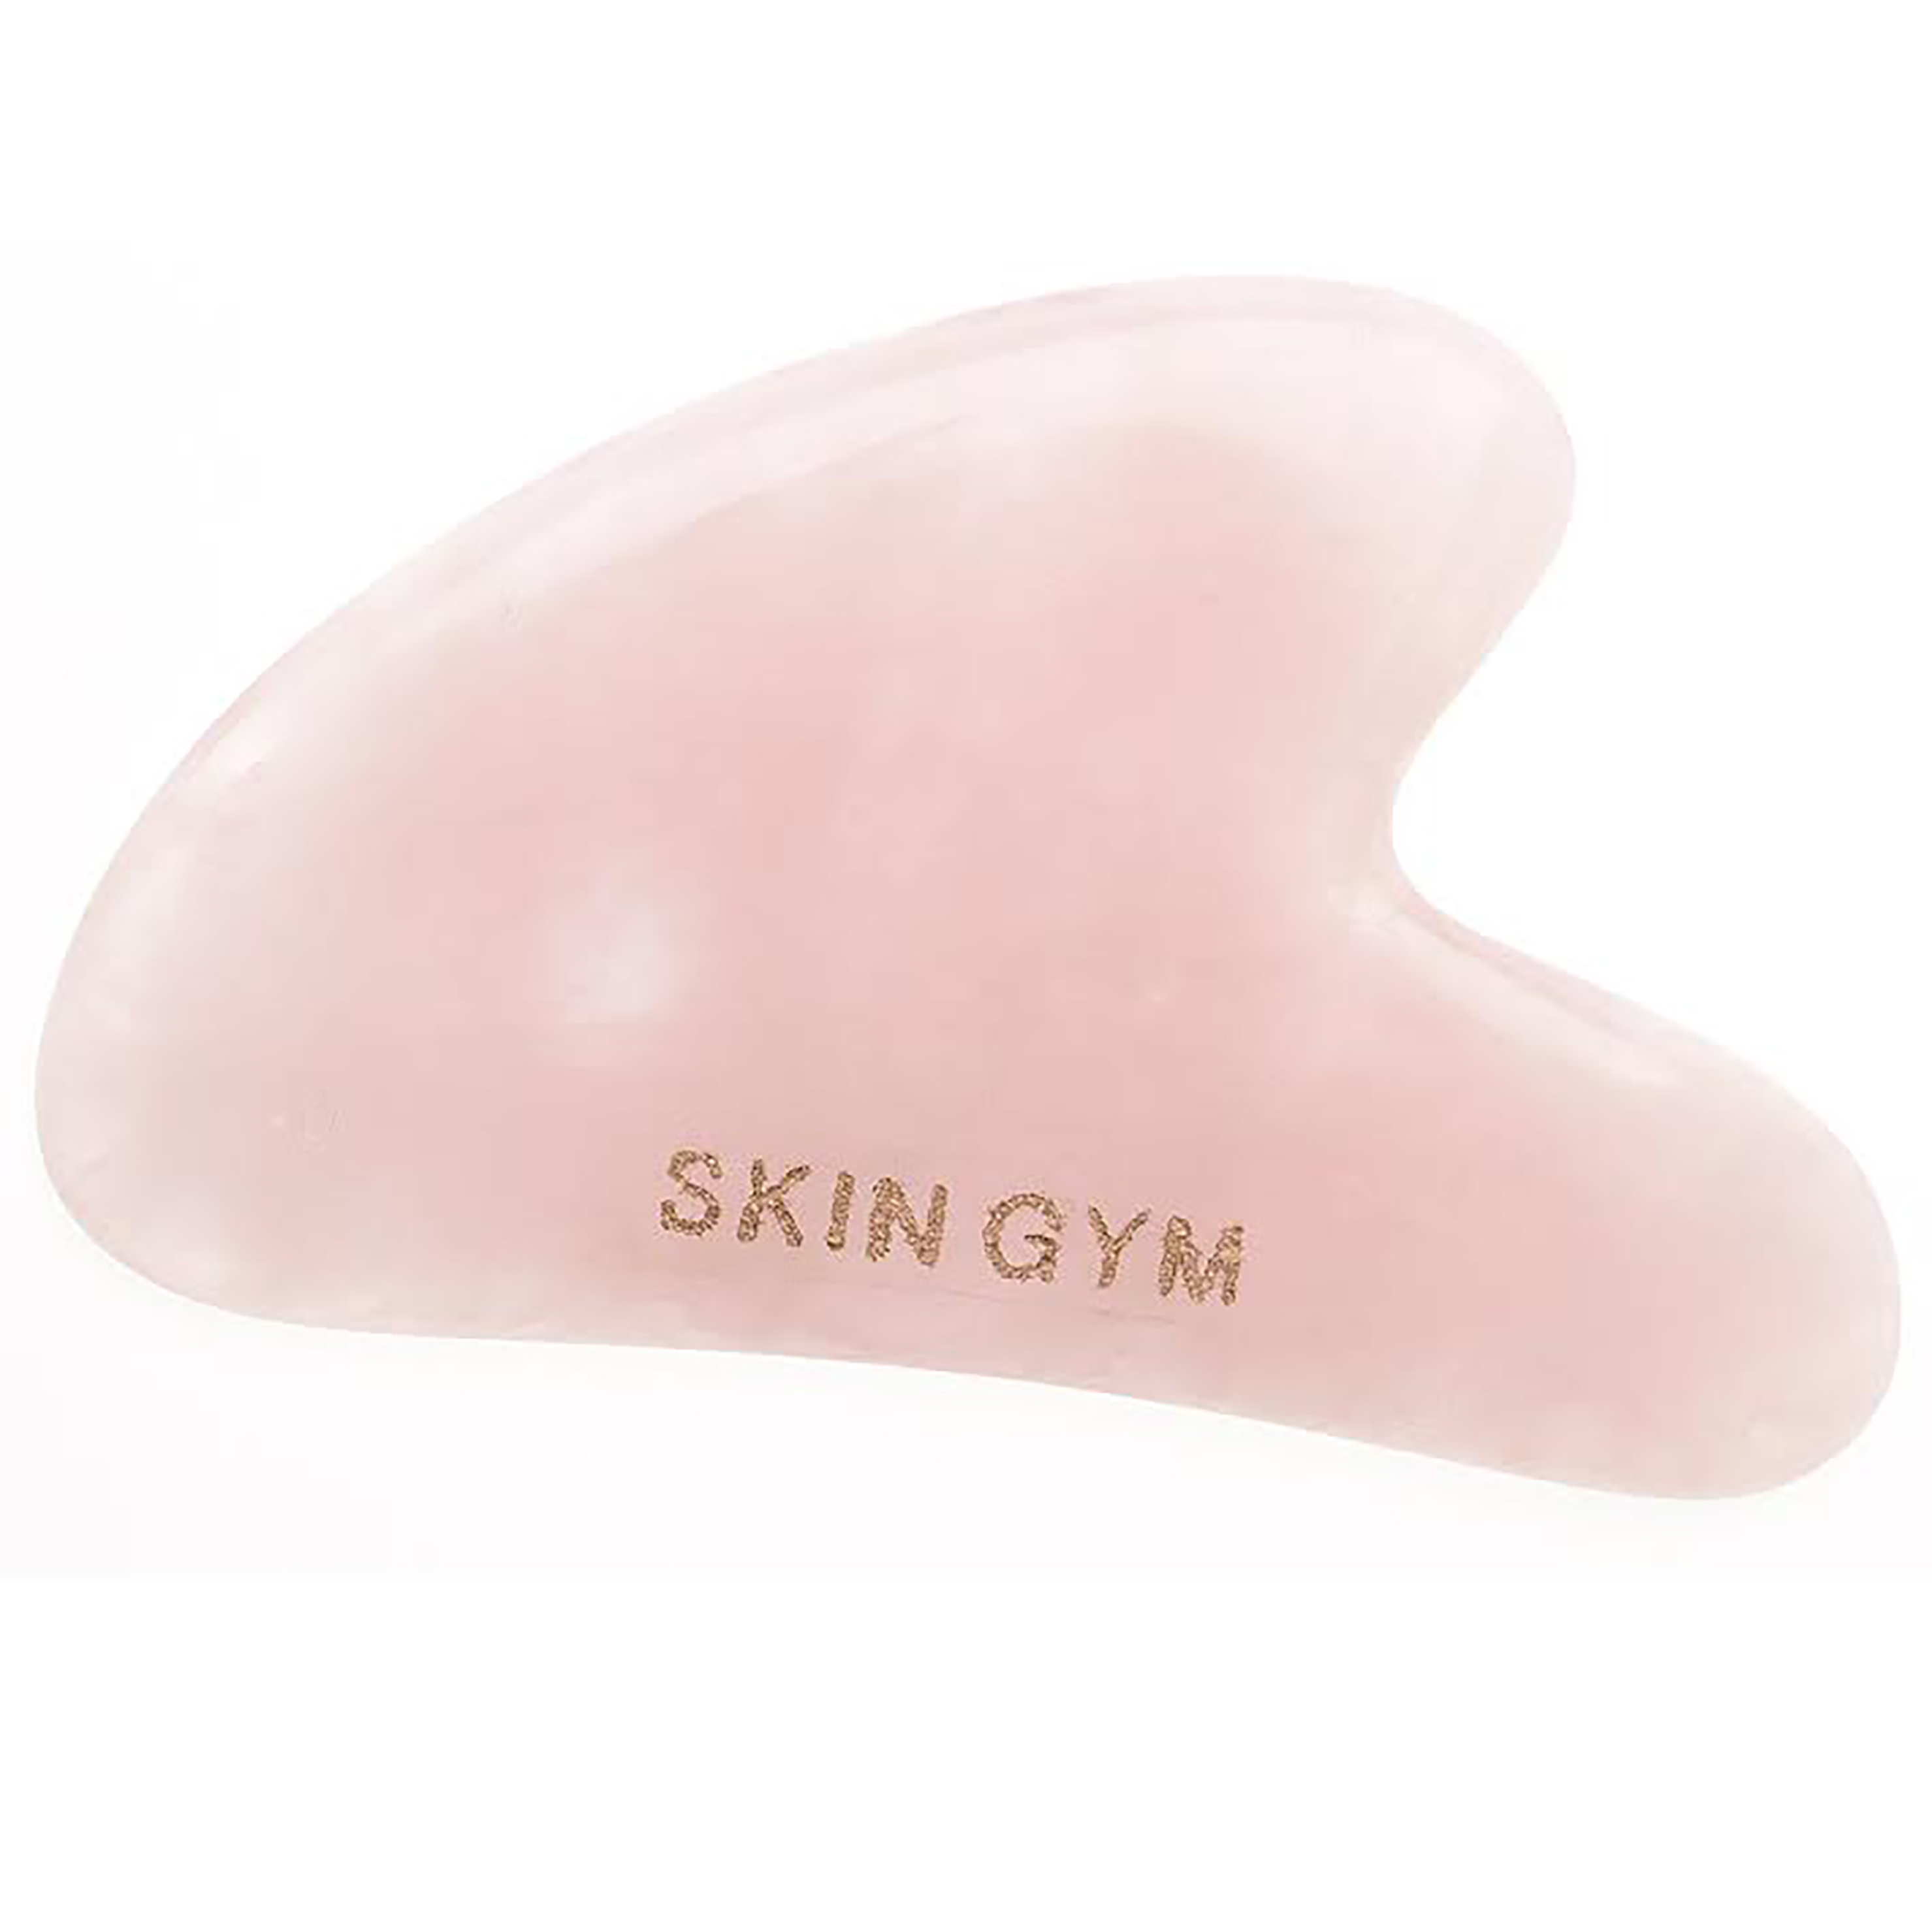 La piedra Gu Sha de Skin Gym, a la venta en Sephora, con su forma de corazn, su lado liso y el cncavo...